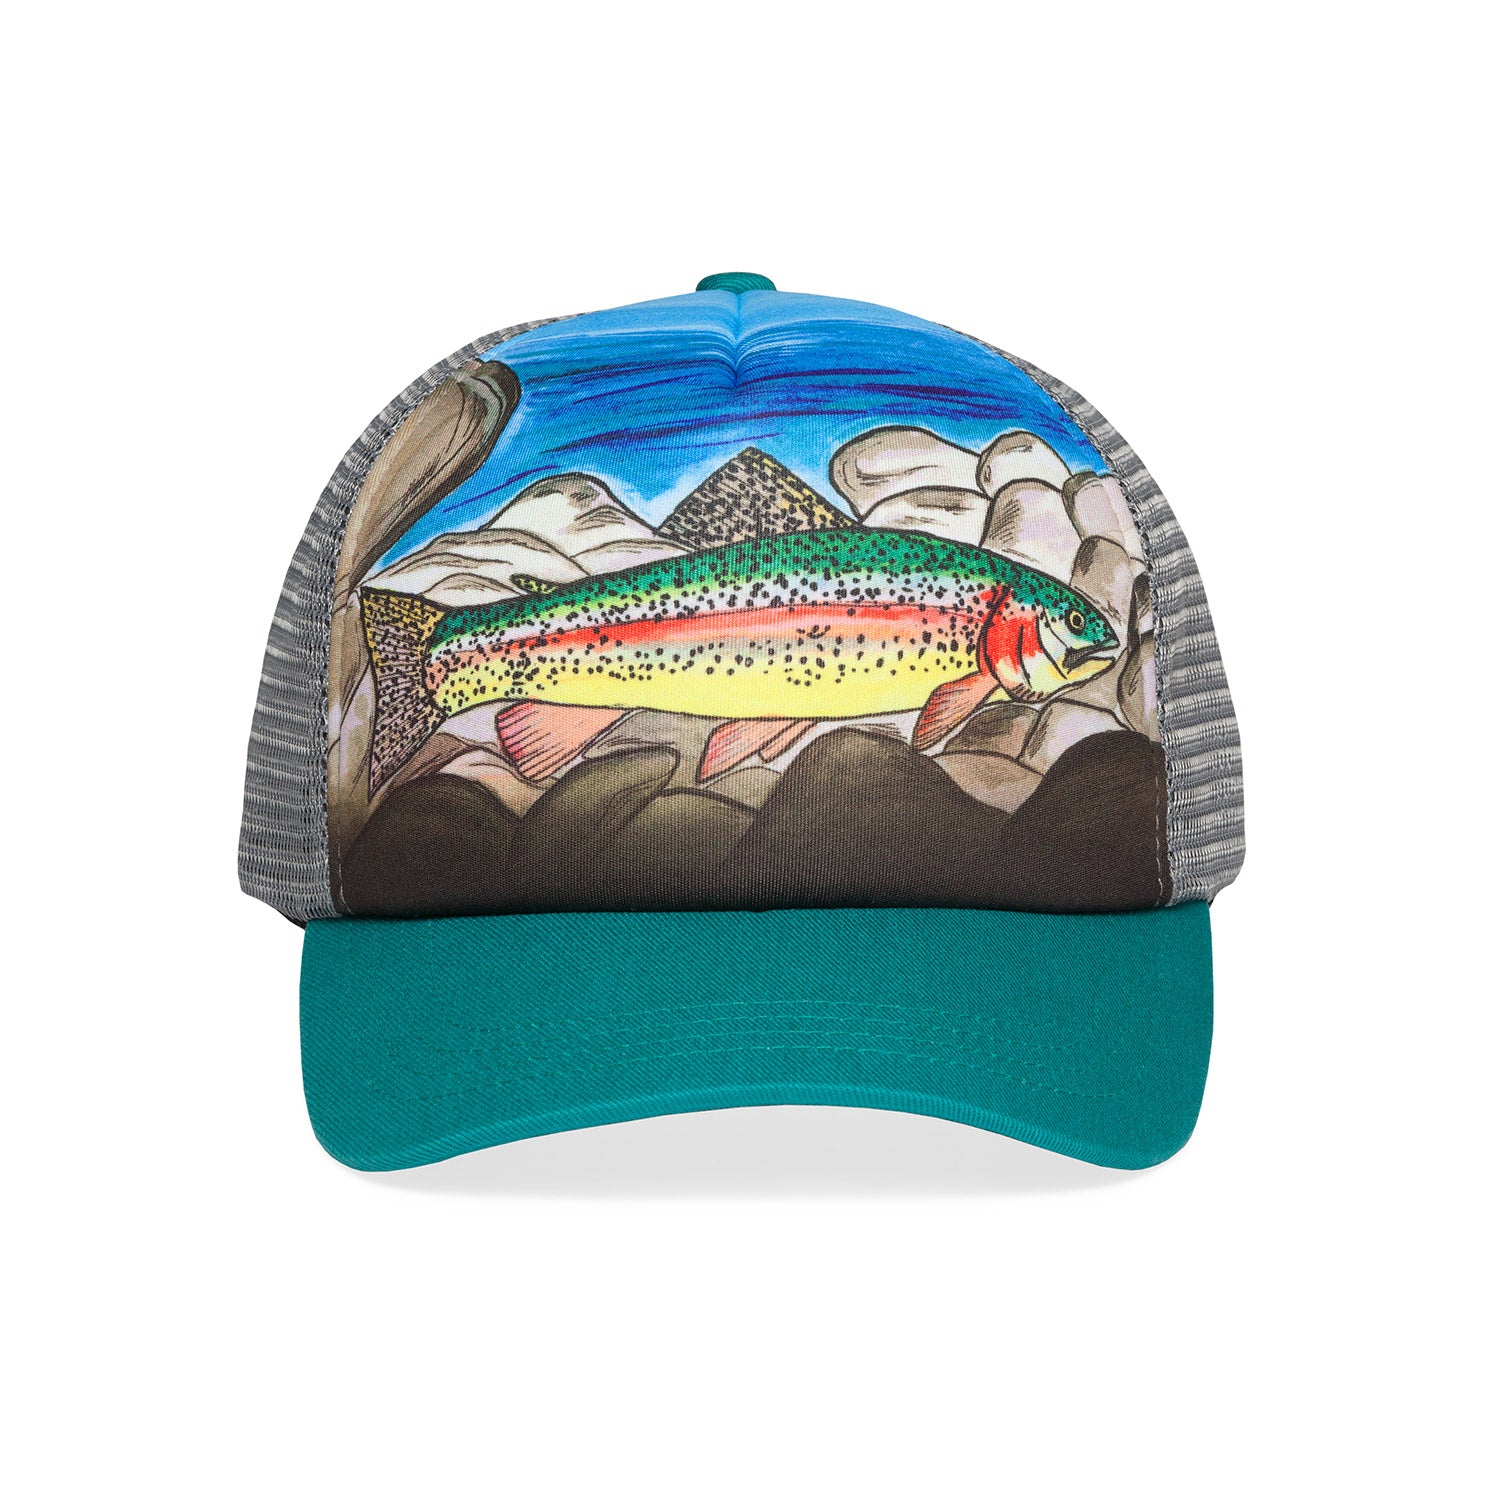 Youth Fishing Hats  SIMMS Fishing Hats